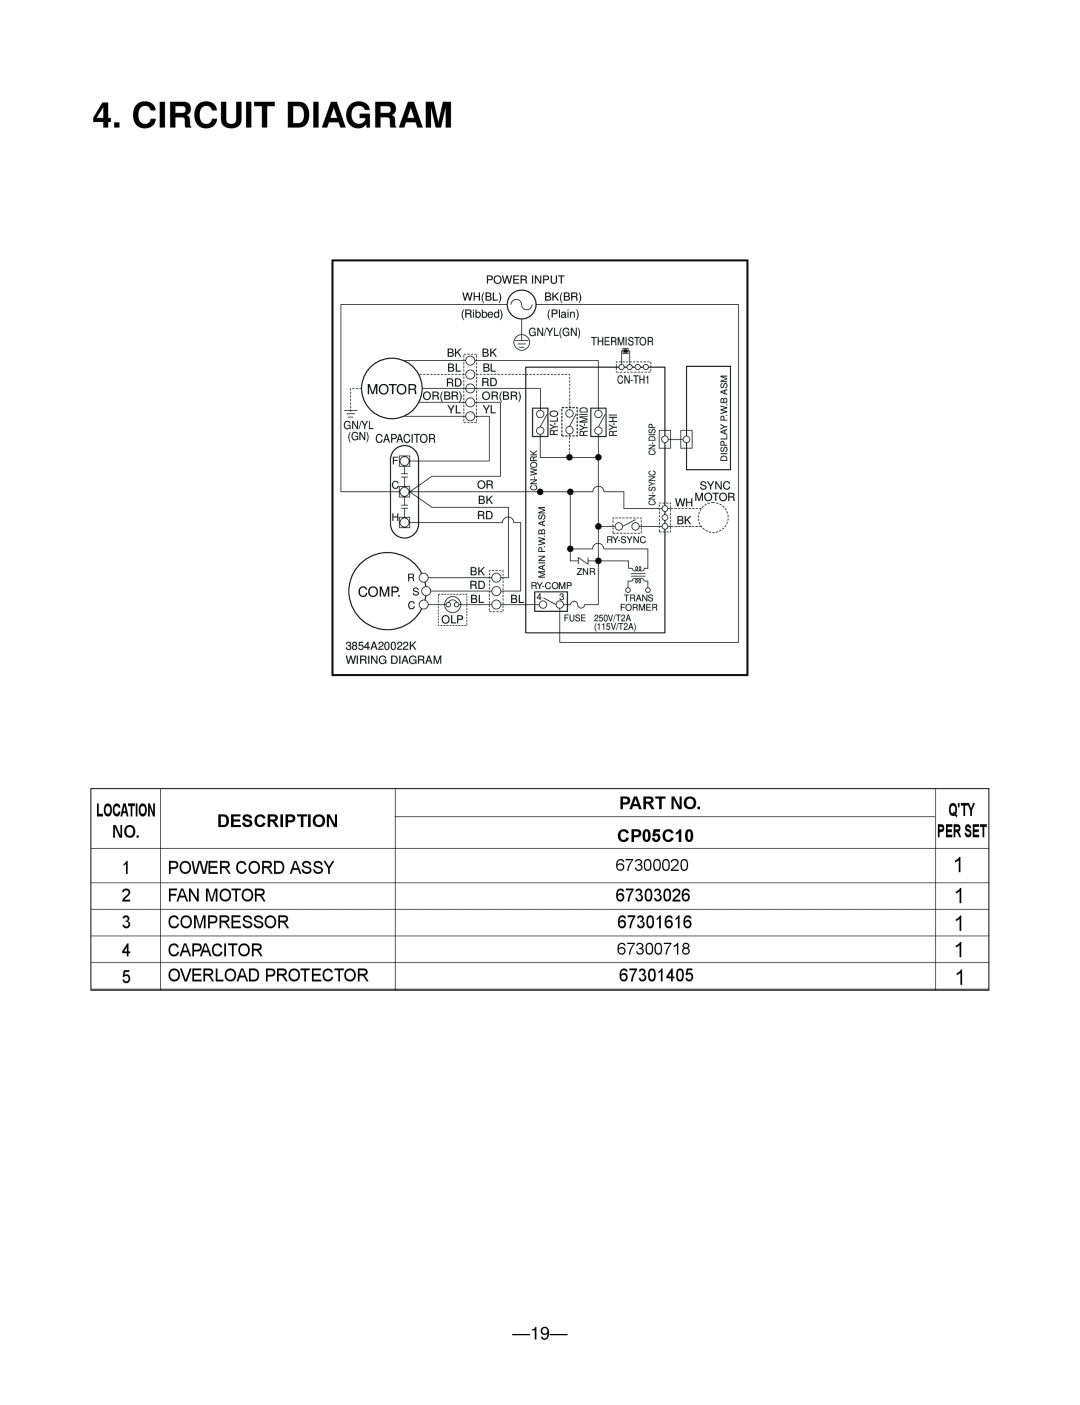 Friedrich CP05C10 manual Circuit Diagram, Description, Qty Per Set, 1 1 